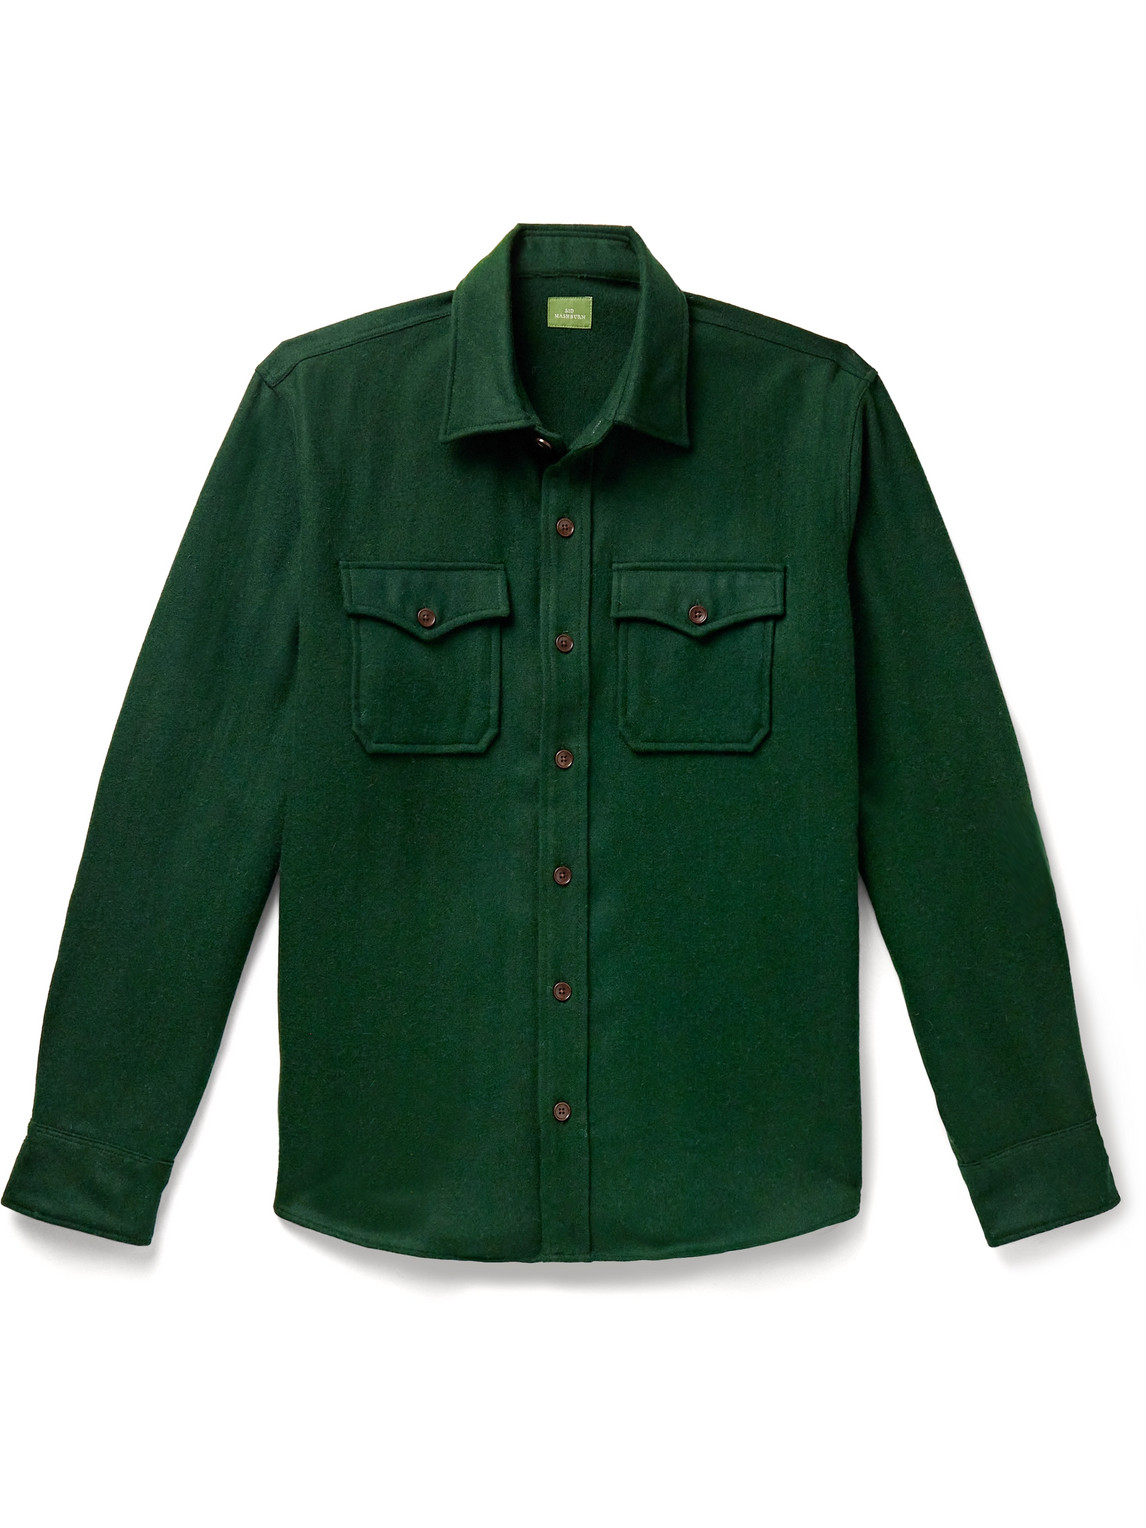 CPO Merino Wool Shirt Jacket